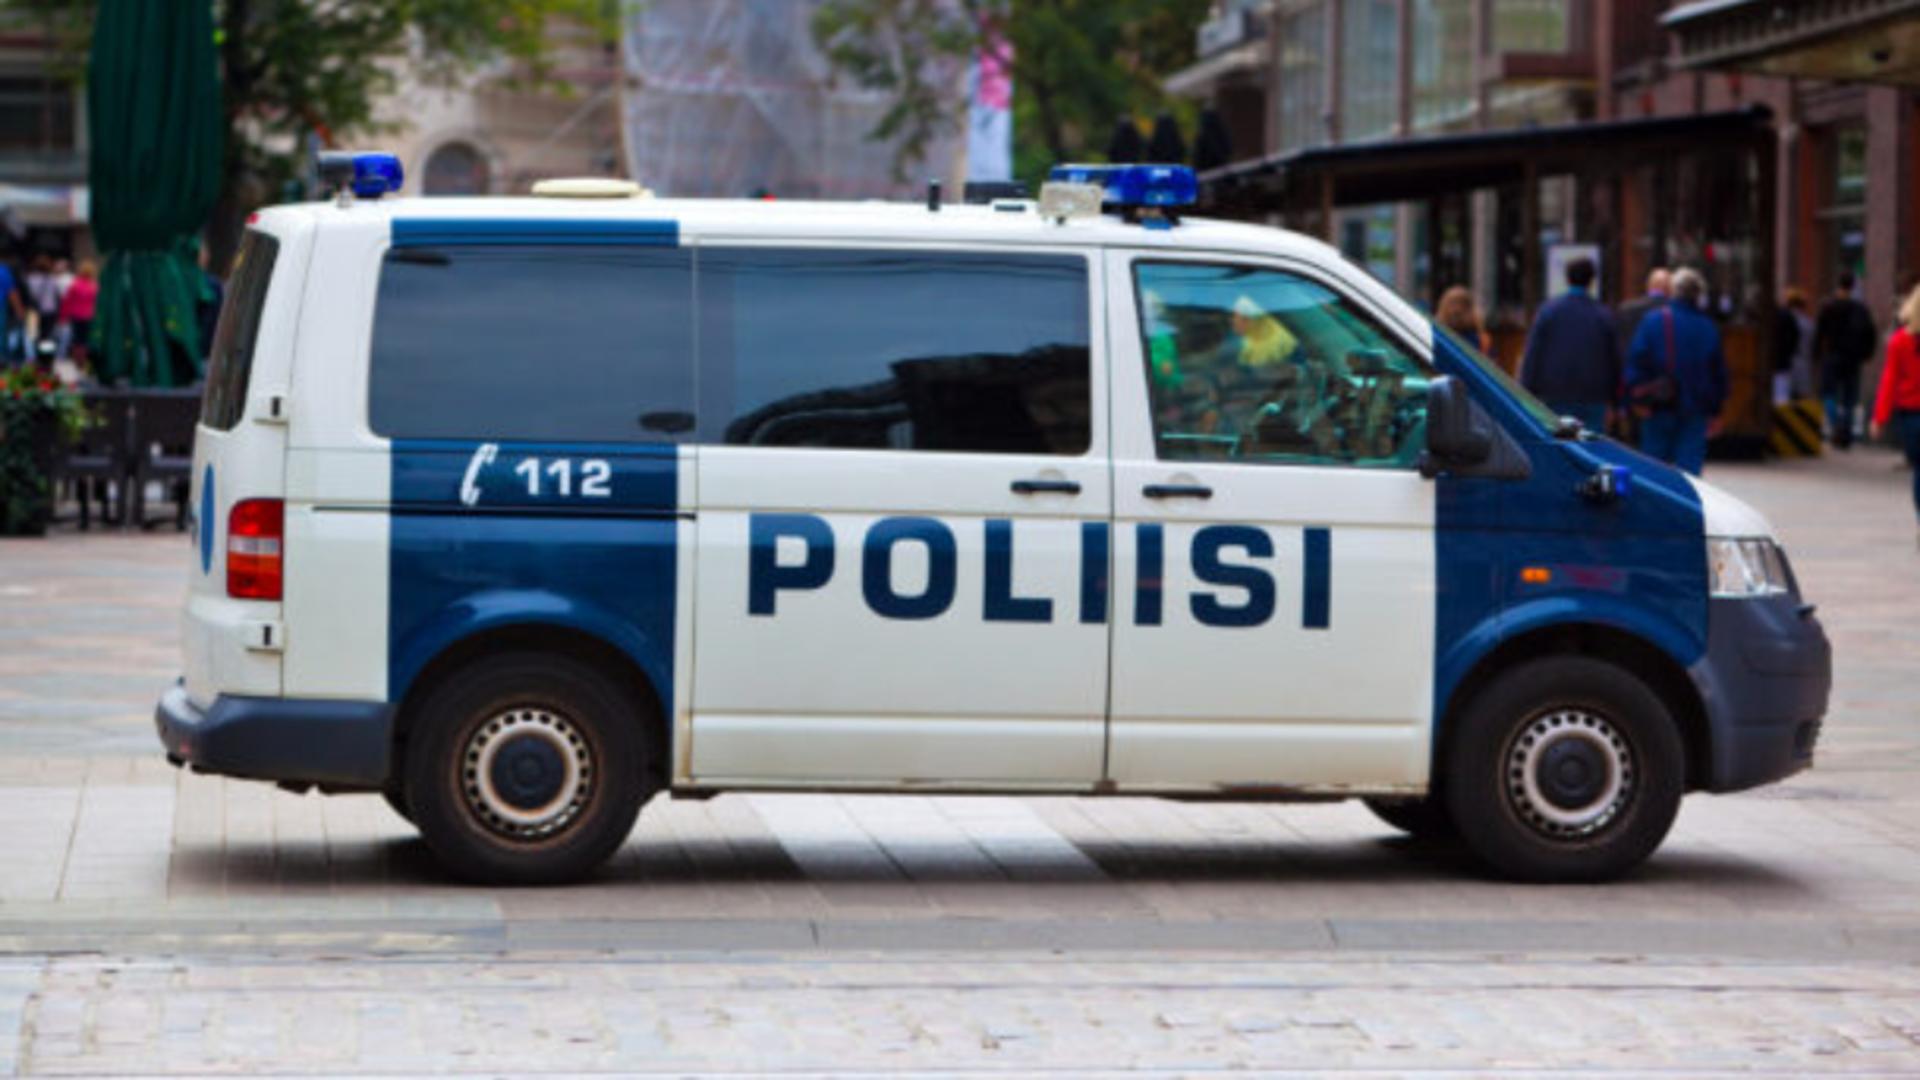 Împușcături la o școală din Finlanda. Un elev a deschis focul și a rănit trei colegi